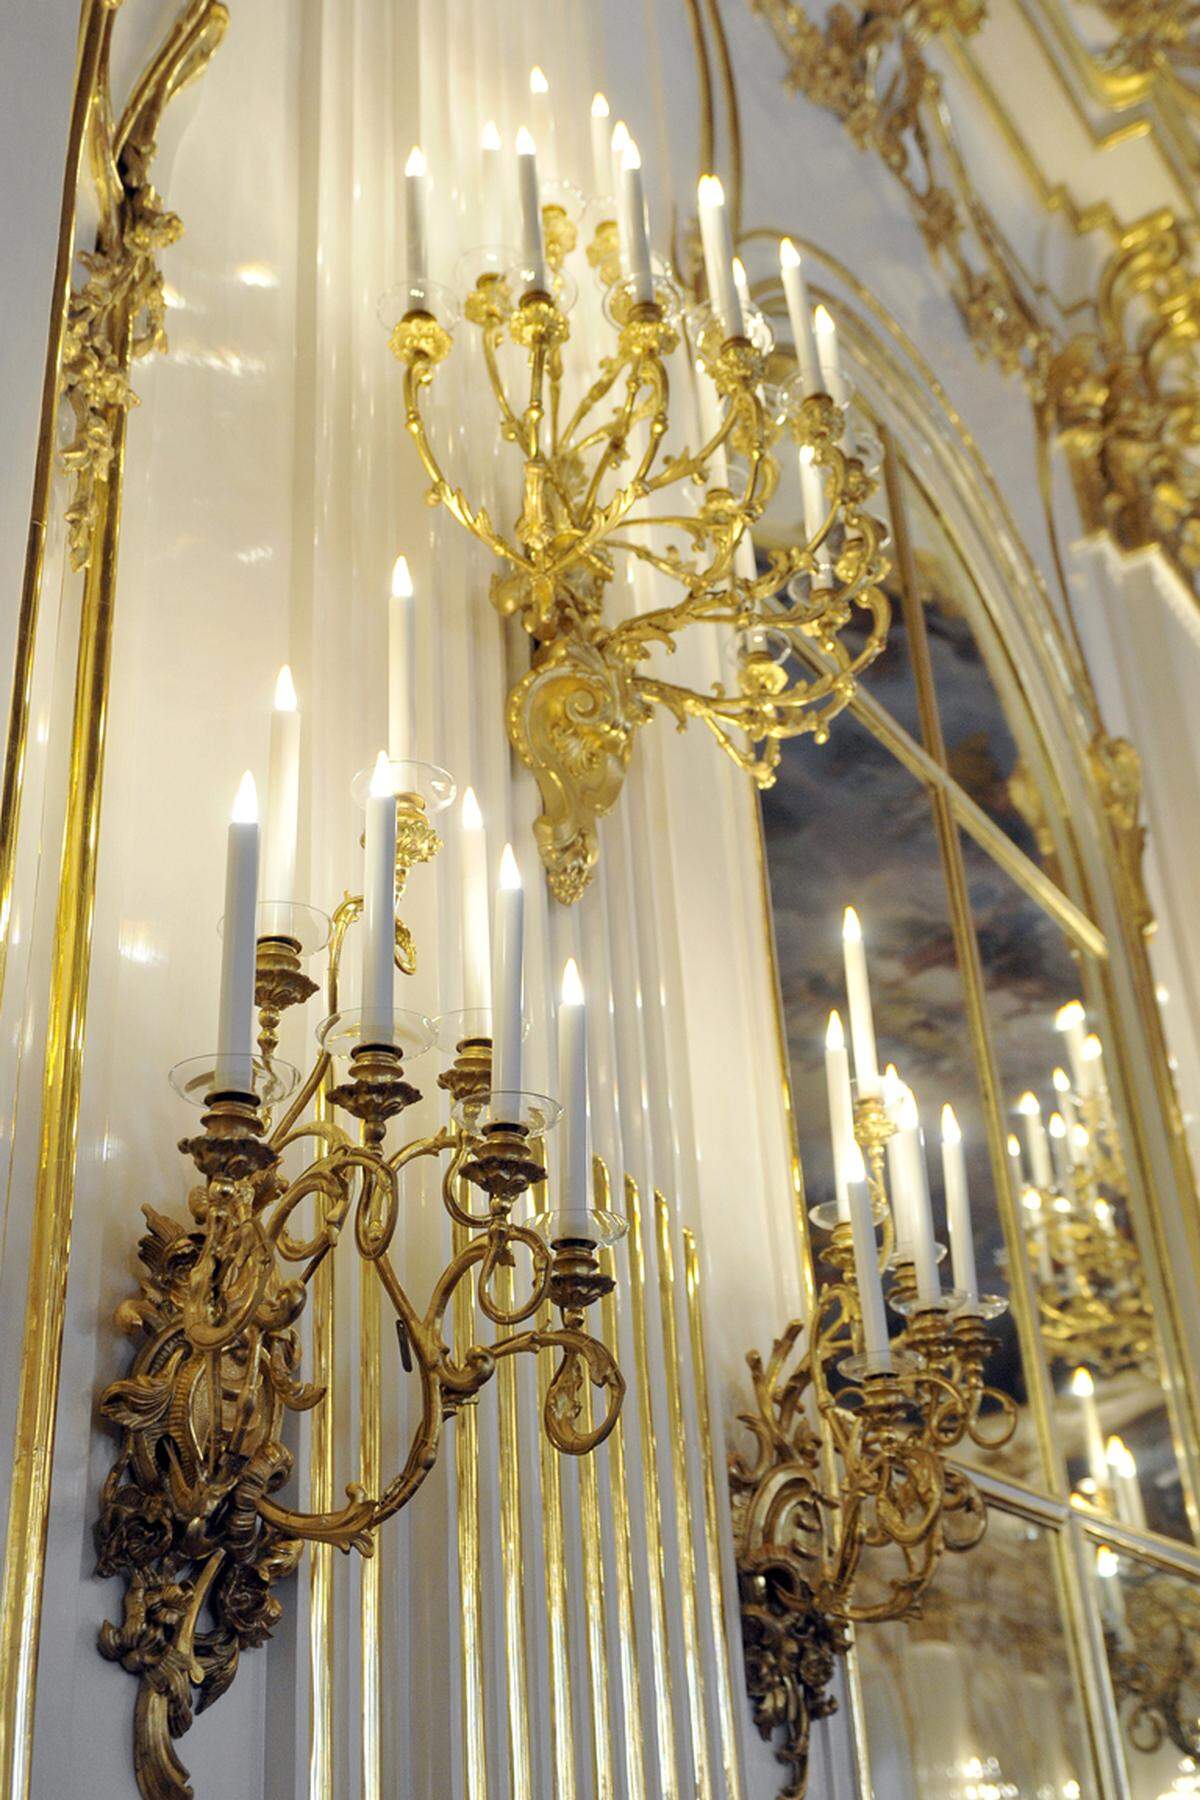 Weiße Wände wie aus Porzellan mit vergoldeten Elementen an den Seiten: Der größte Prunkraum im Schloss Schönbrunn, die Große Galerie, ist fertig restauriert.